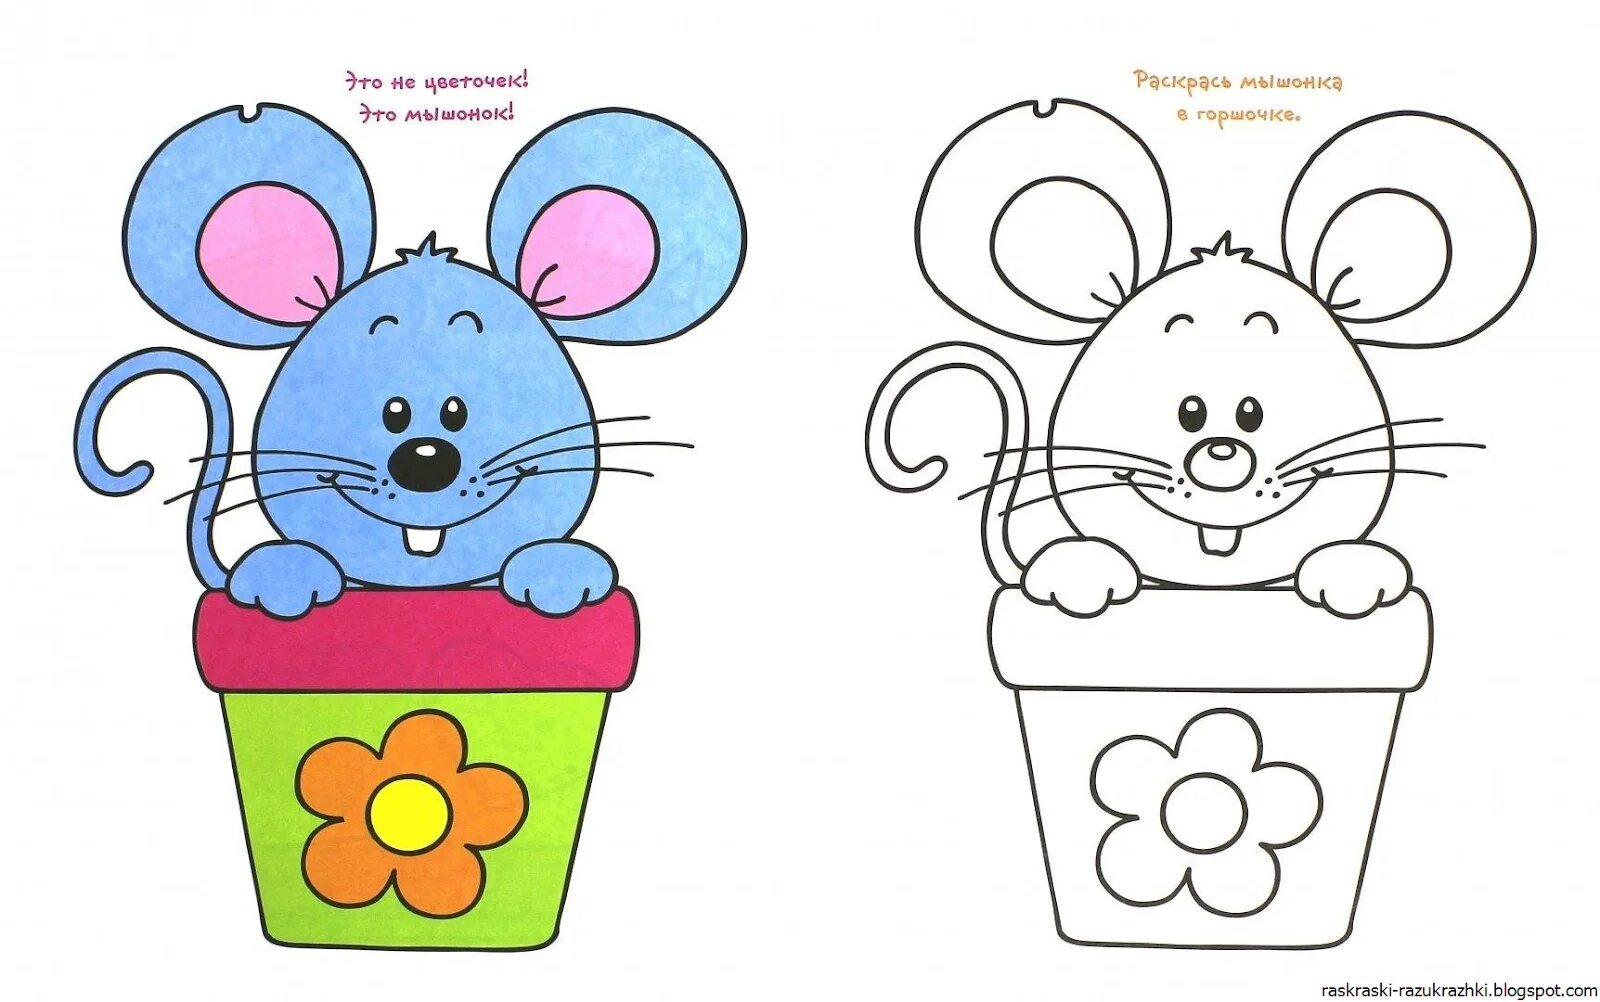 Раскраски Для детей с образцом (39 шт.) - скачать или распечатать бесплатно #